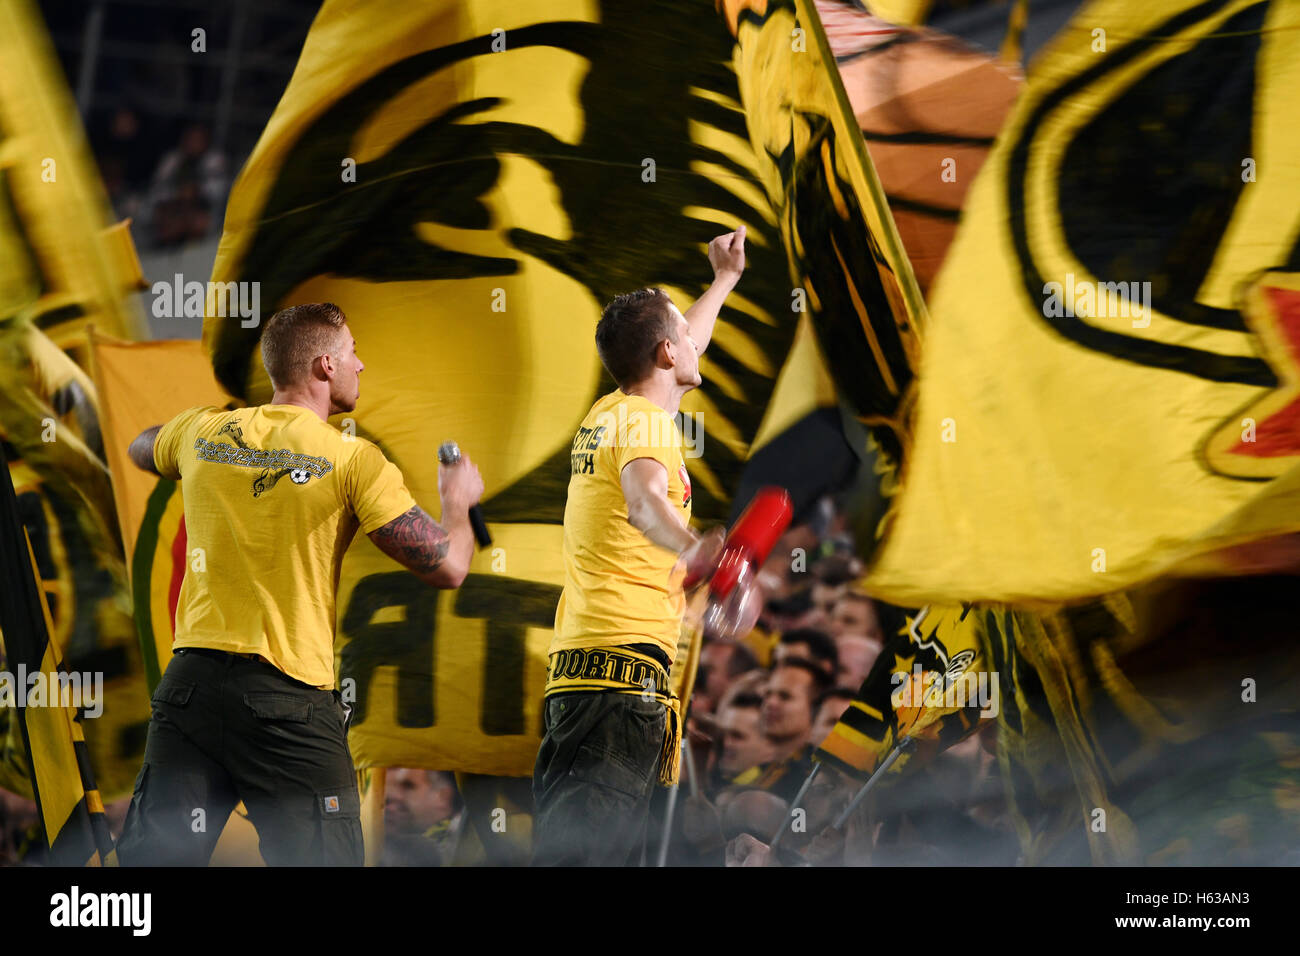 Signal-Iduna Arena Dortmund Deutschland 14.10.2016, 1. Fußball Bundesliga Saison 2016/2017 Spieltag 7, Borussia Dortmund (BVB) vs. Hertha BSC---Kapos die Dortmund-ultra-Fans unter gelber Flagge Stockfoto